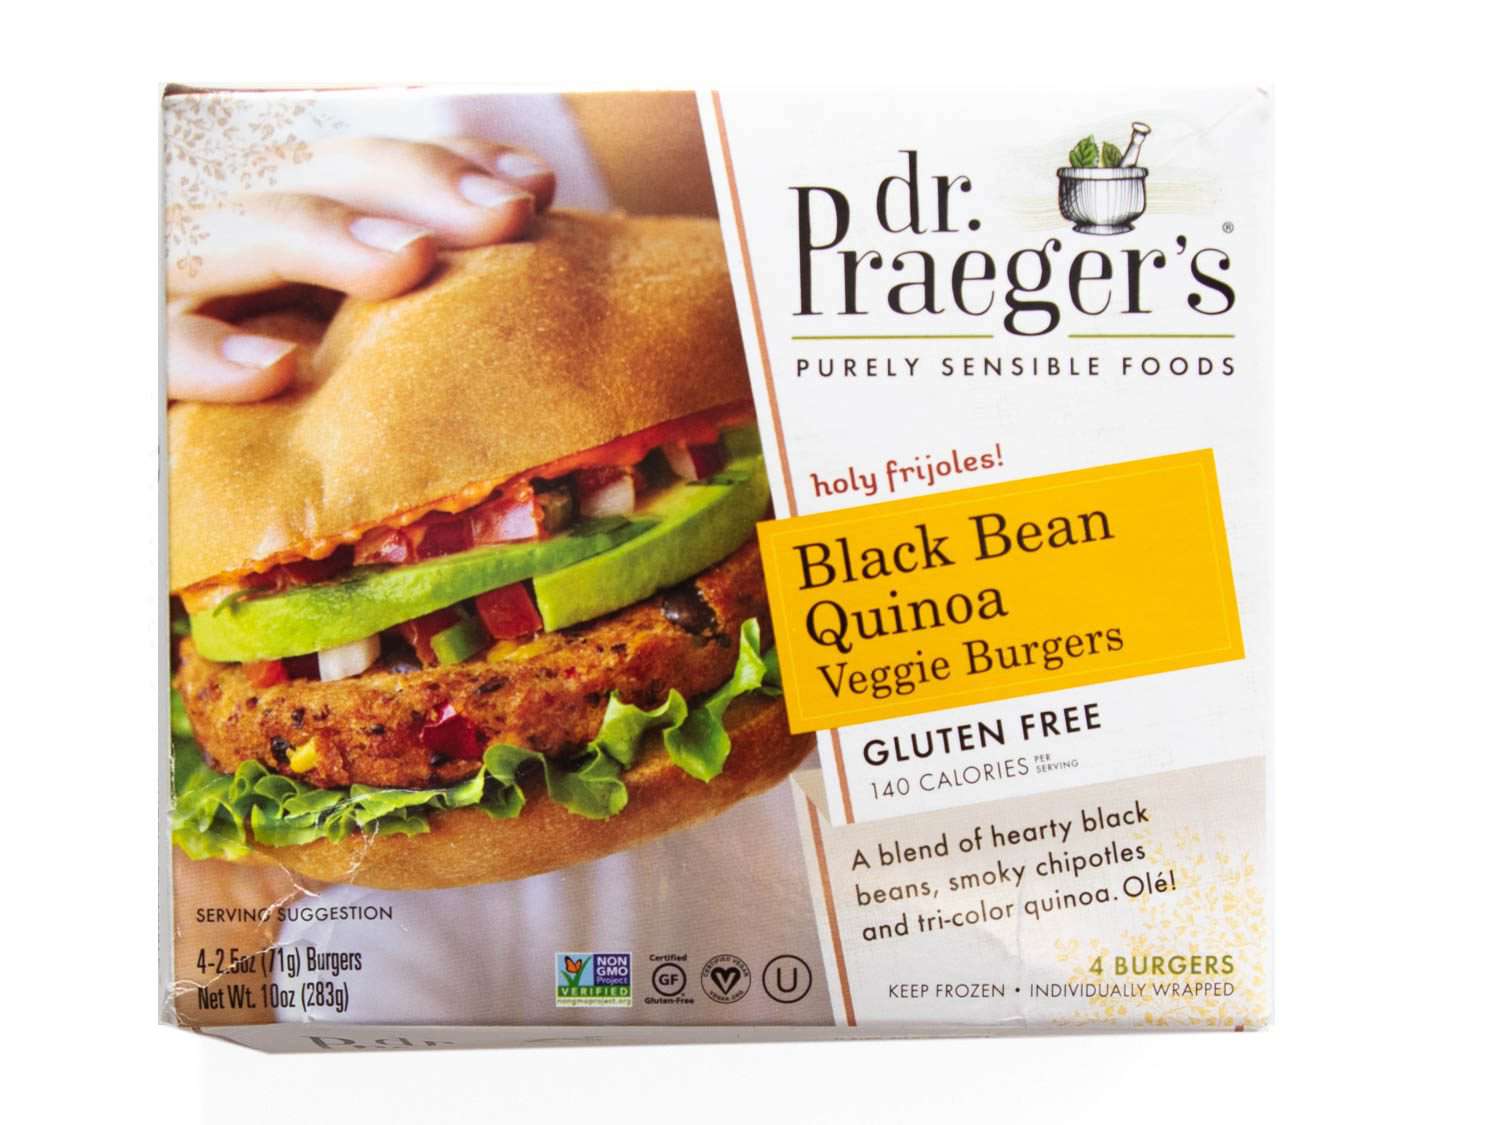 普雷格博士的黑豆藜麦素食汉堡的产品照片